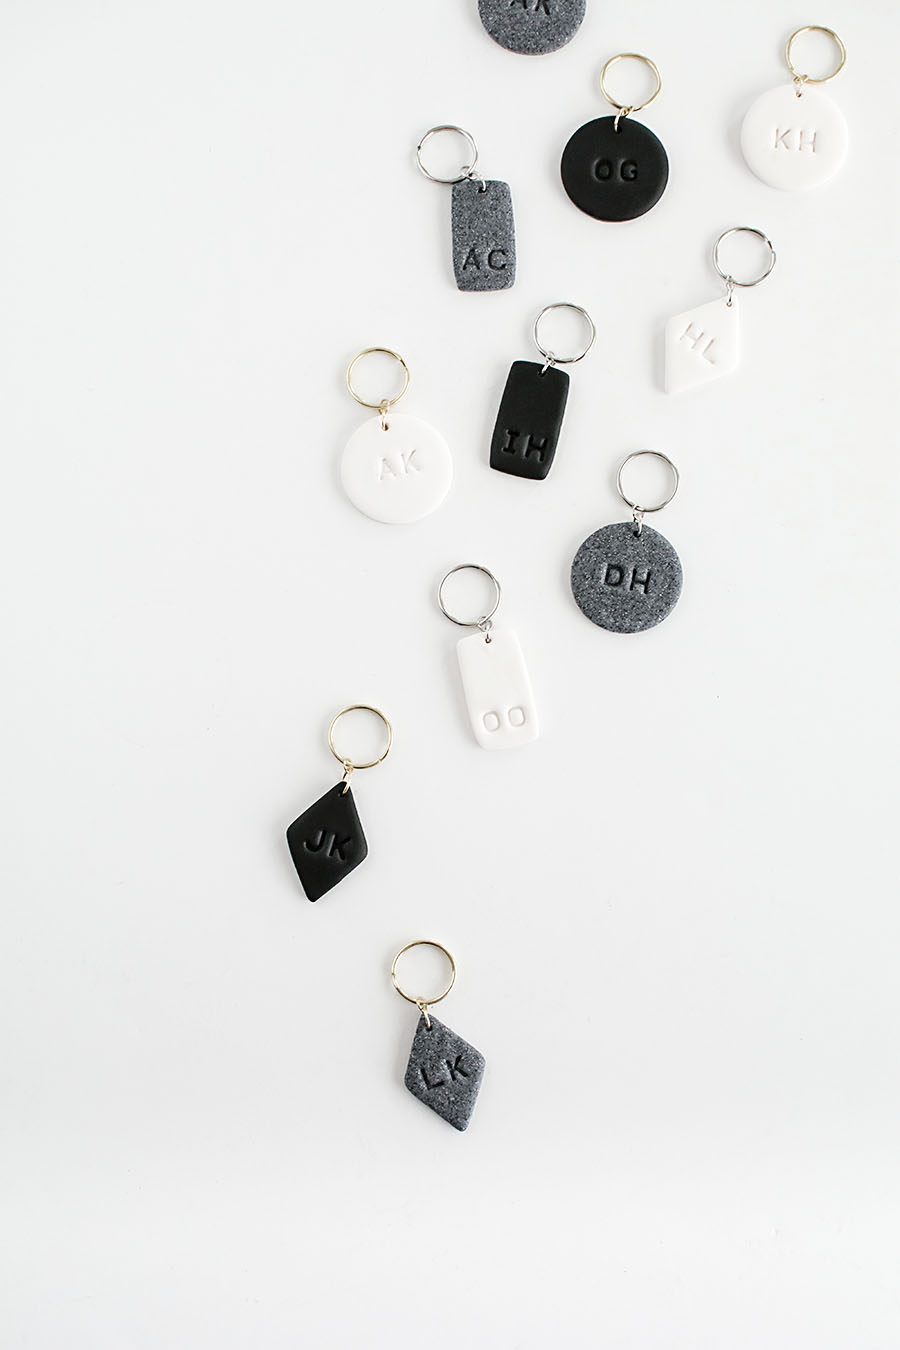 DIY Monogram Clay Keychains - Homey Oh My